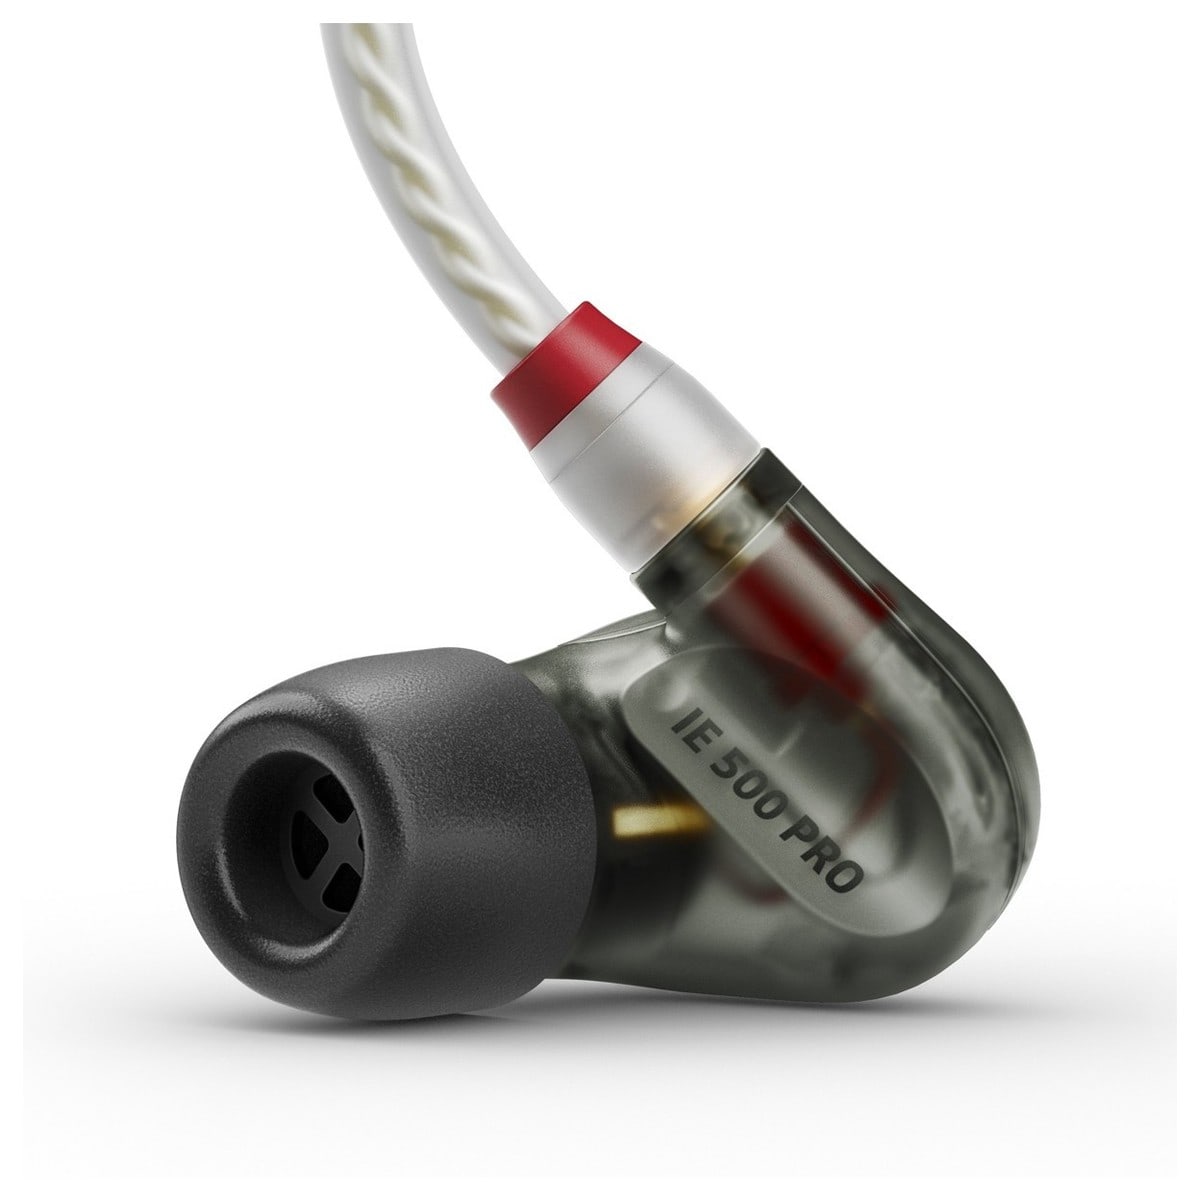 Sennheiser IE500 Pro Smoky Black In-Ear Monitor | XLR